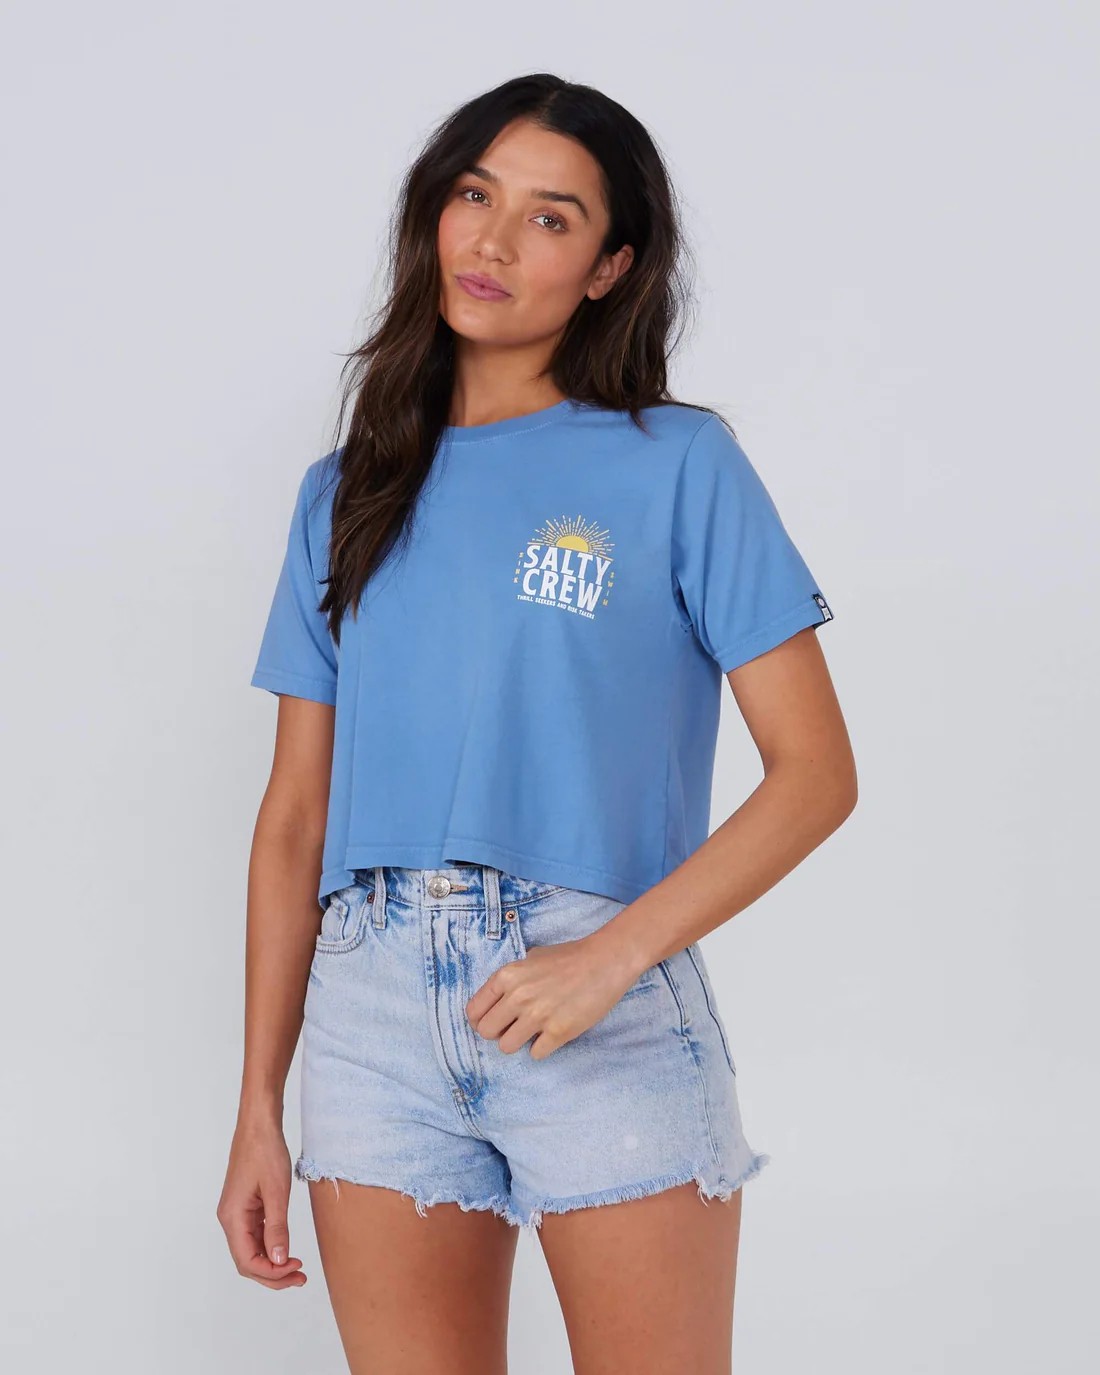 Salty Crew Salty Crew - T-shirt Crop Bleu